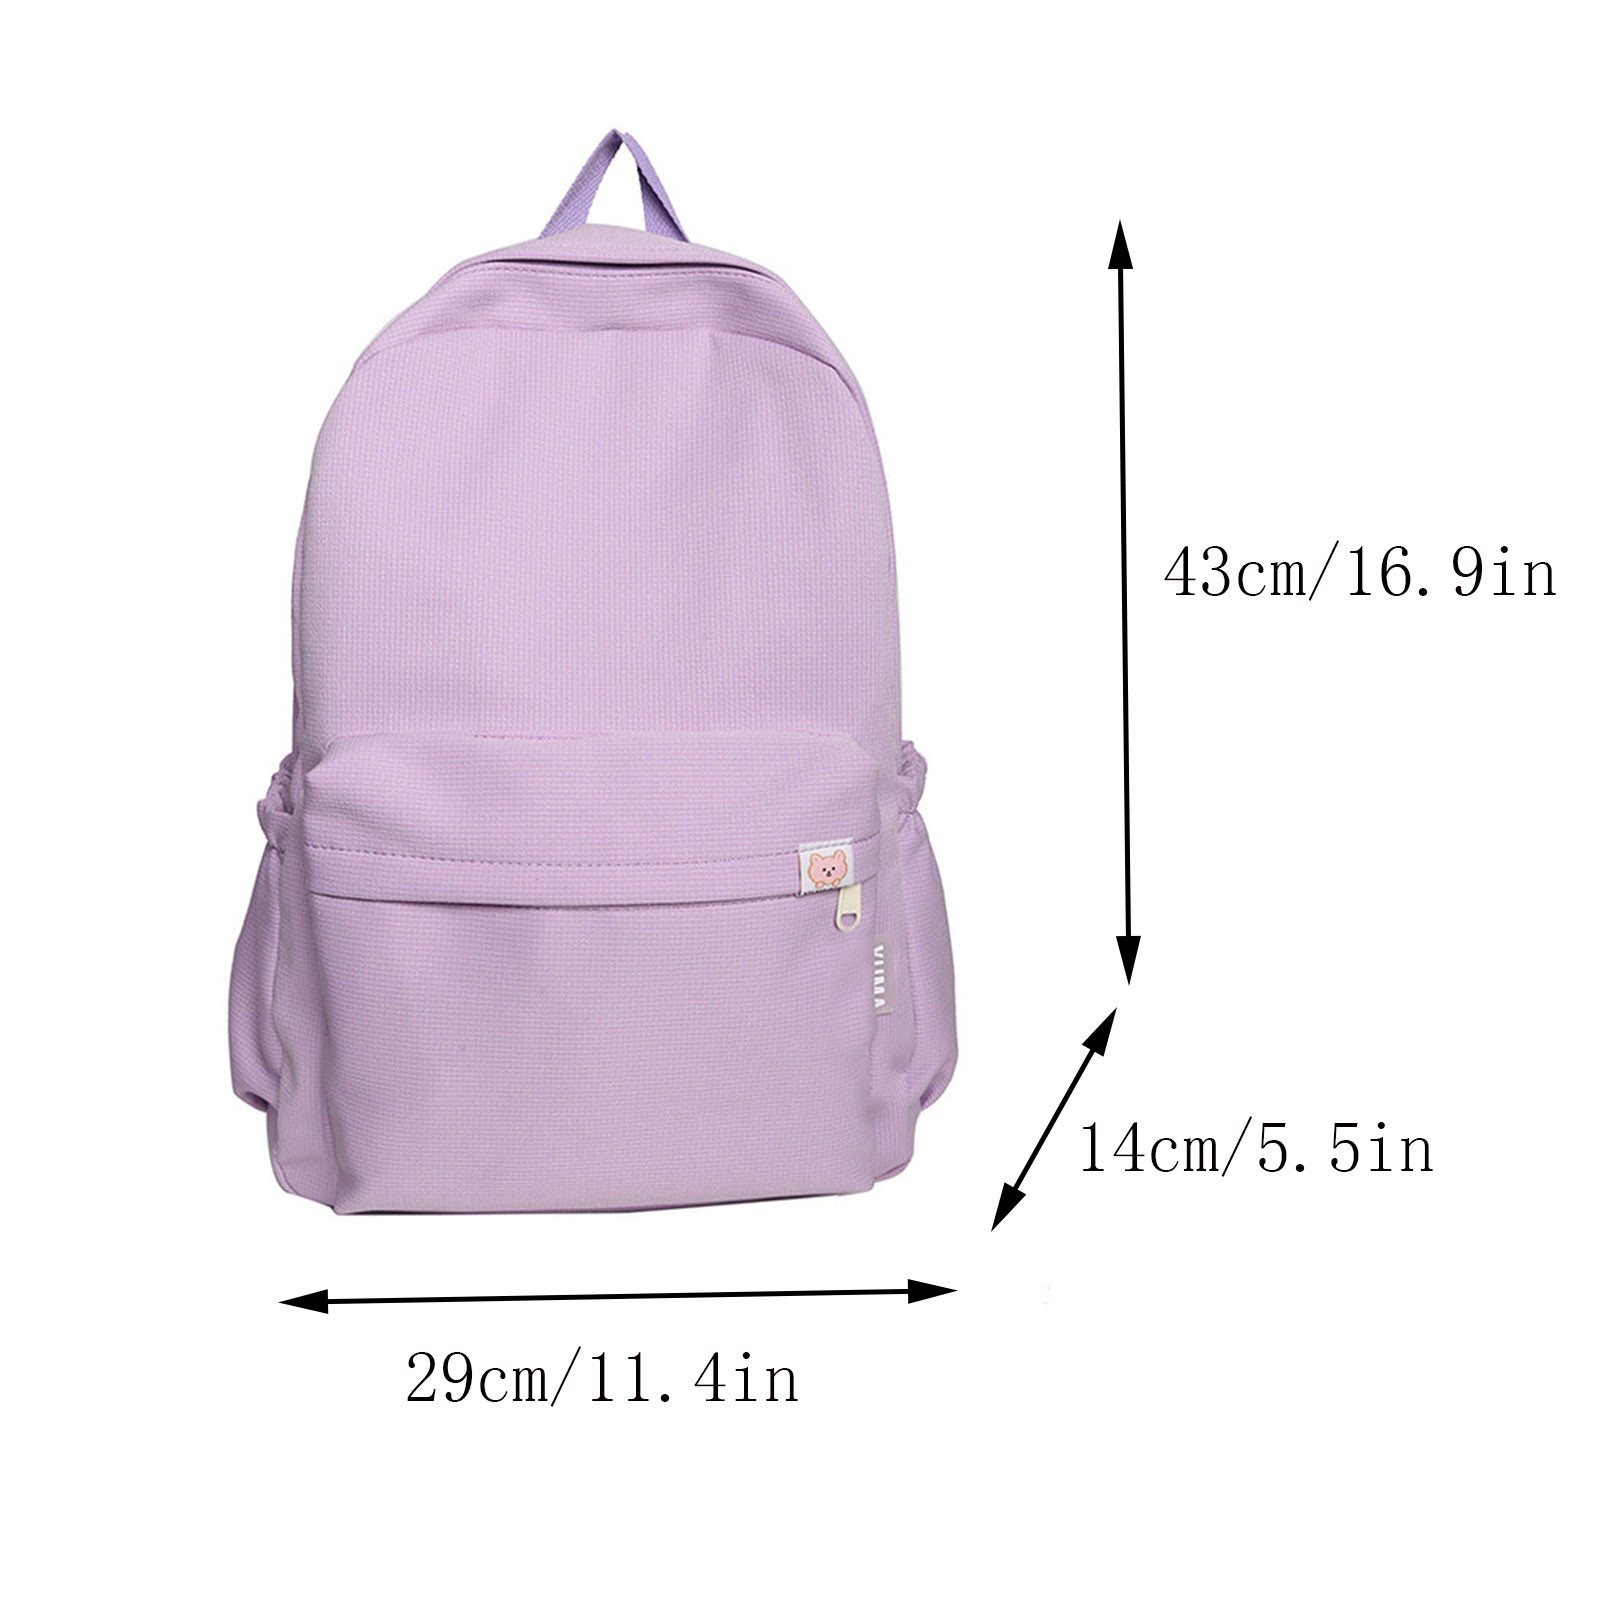 I've Got your Back…Pack: 2014 Back to School Backpacks